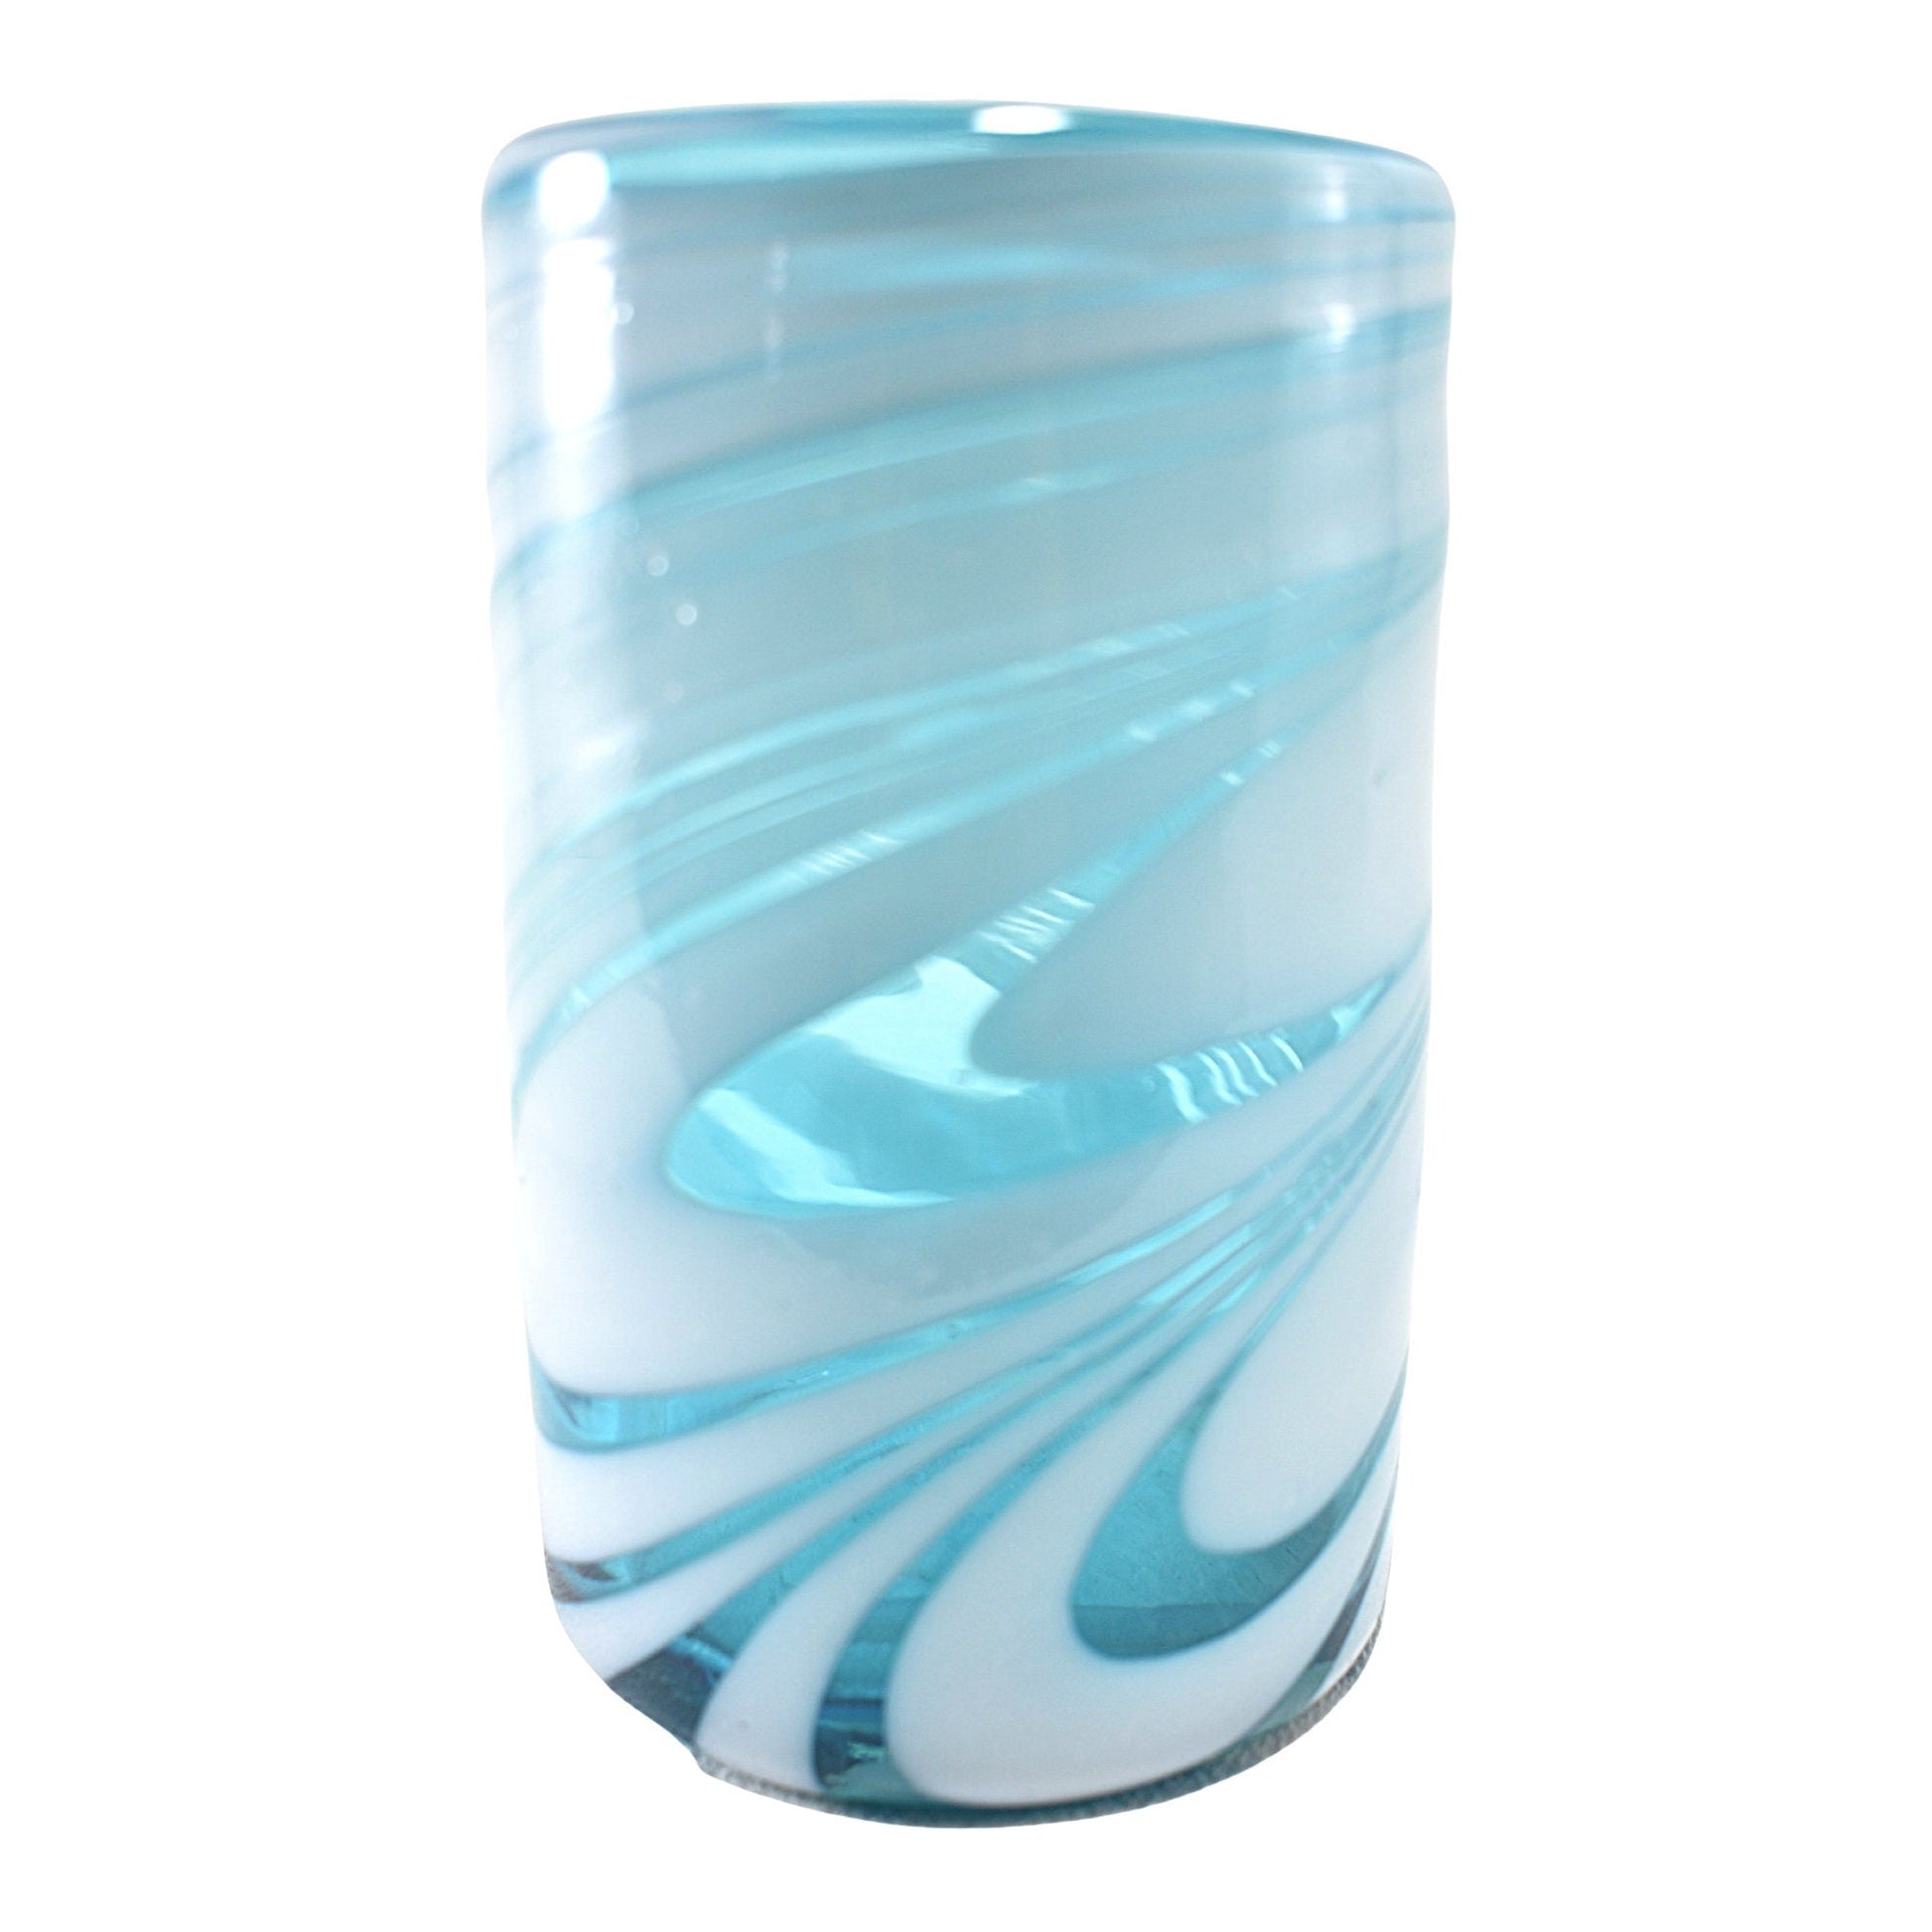 https://www.marey.com.mx/cdn/shop/products/vasos-vidrio-soplado-set-de-6-piezas-hechos-artesanalmente-en-mexico-poseidon-natural-agua-16-oz-mareyhomegoods-932030.jpg?v=1692962696&width=1946